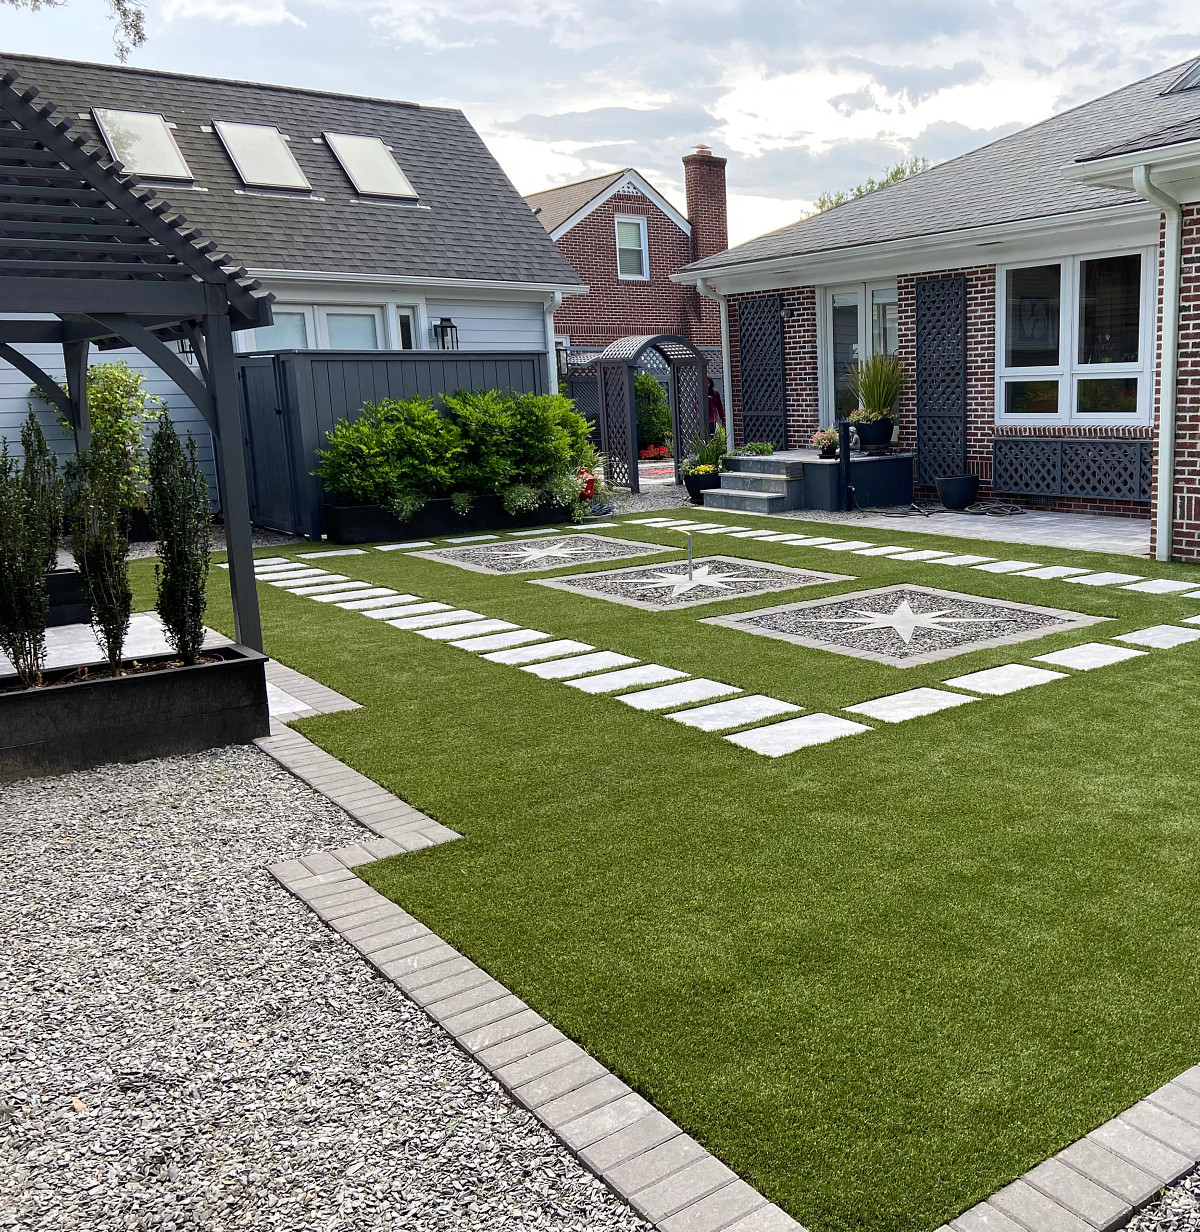 Backyard with Turf stylishly installed with tile walkway